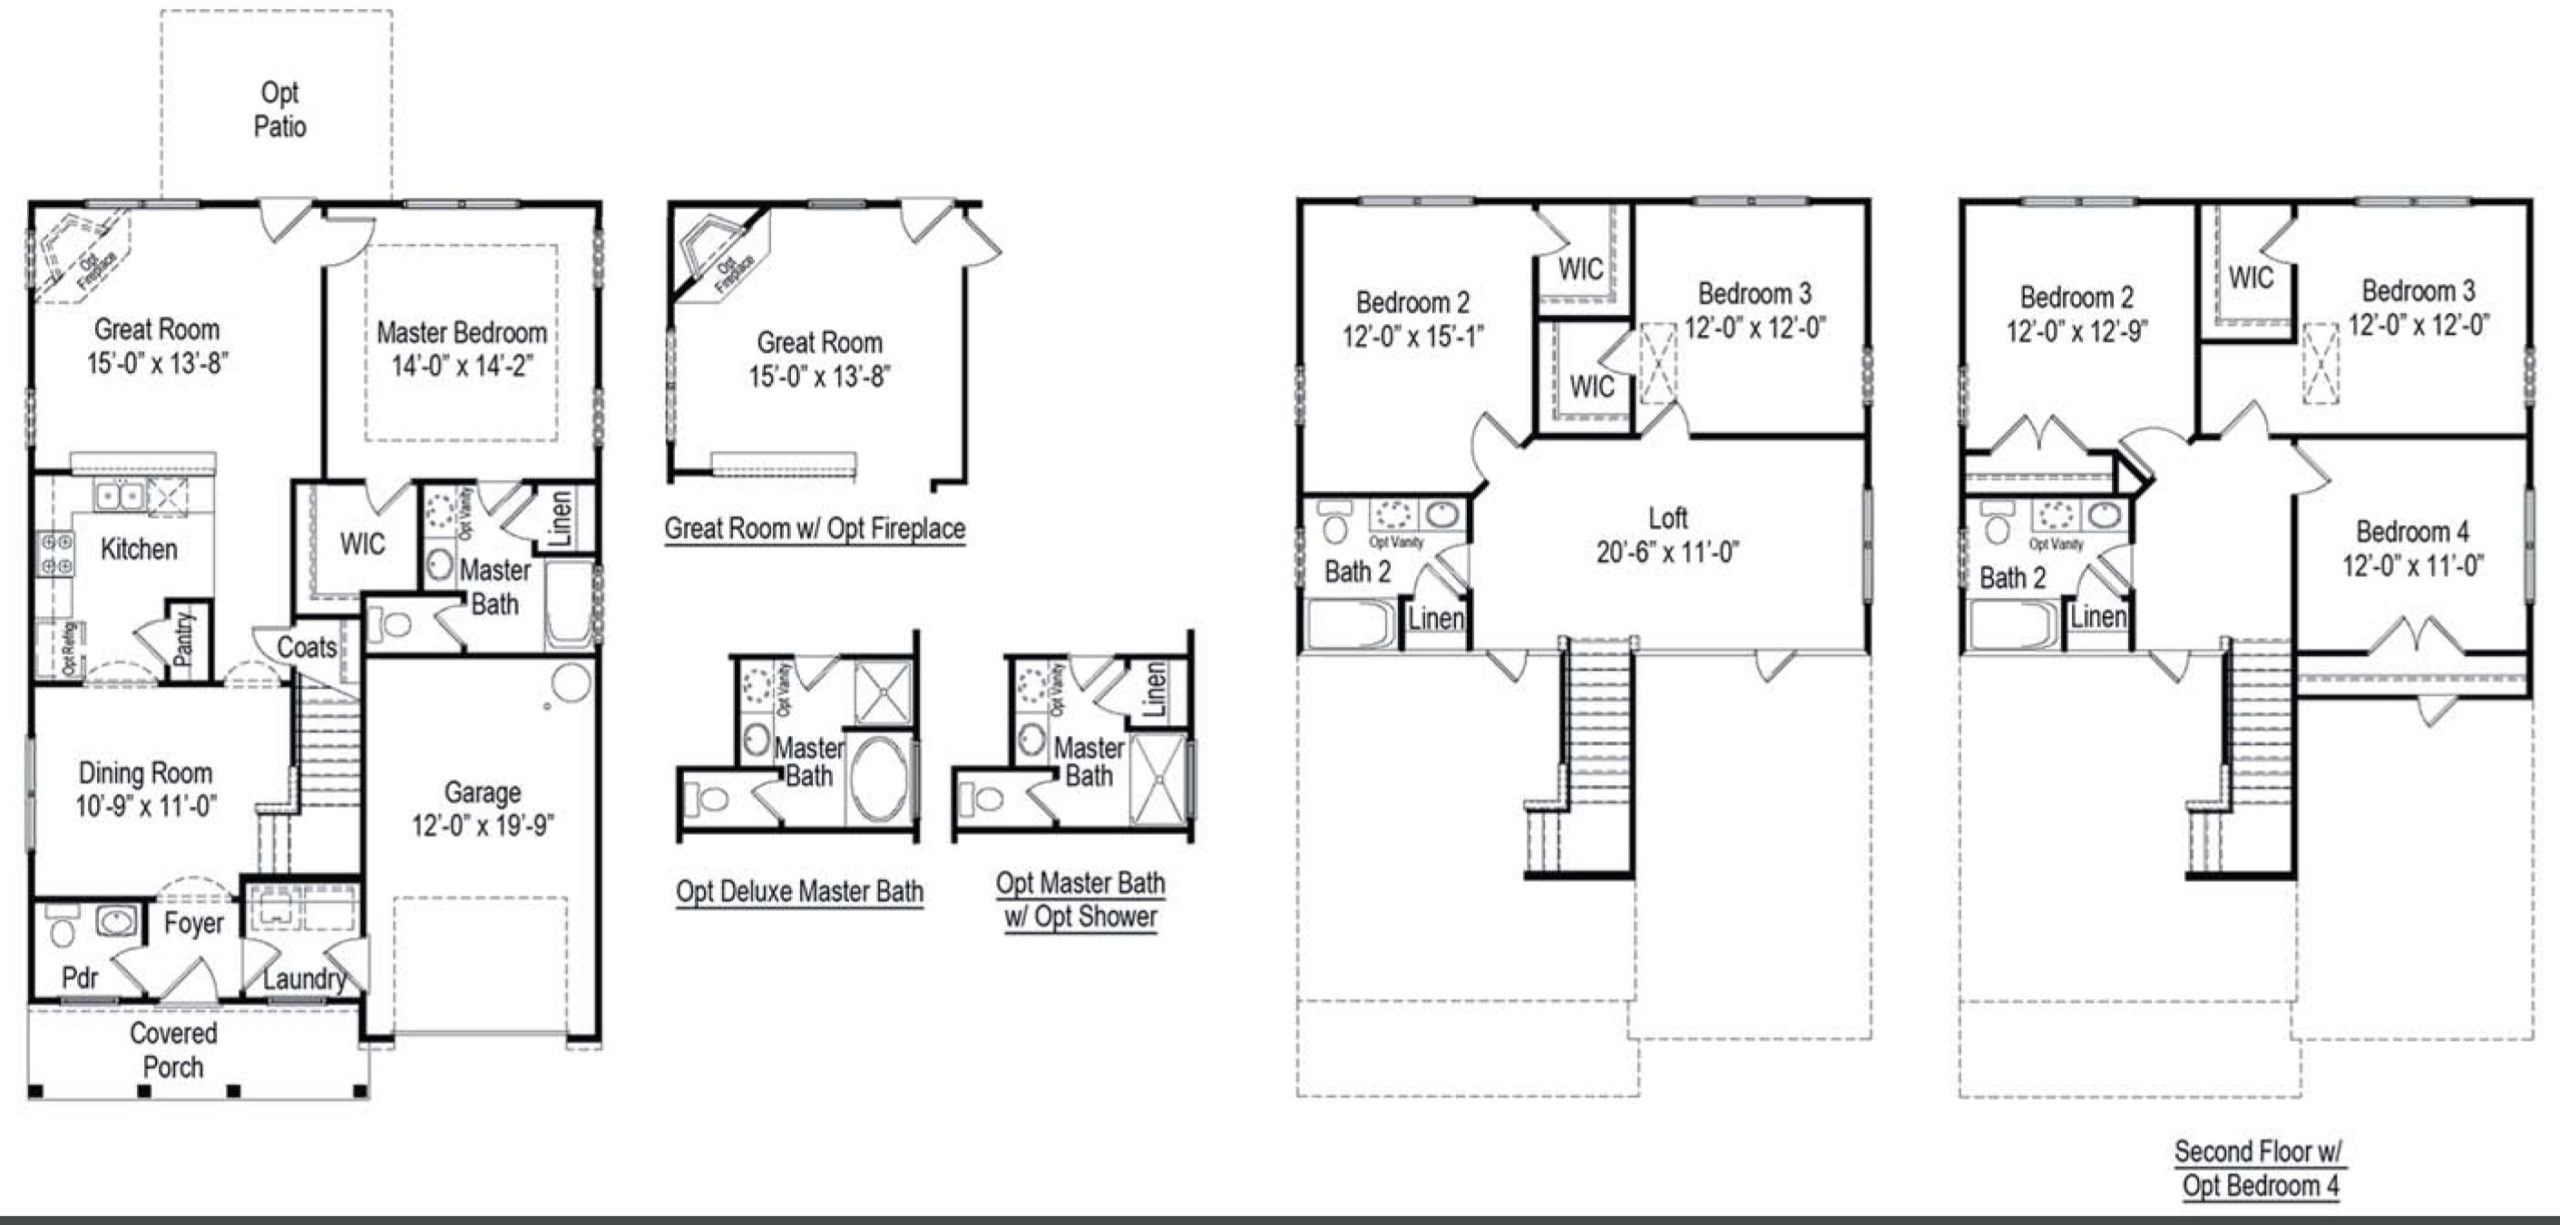 The New Bern floor plan image